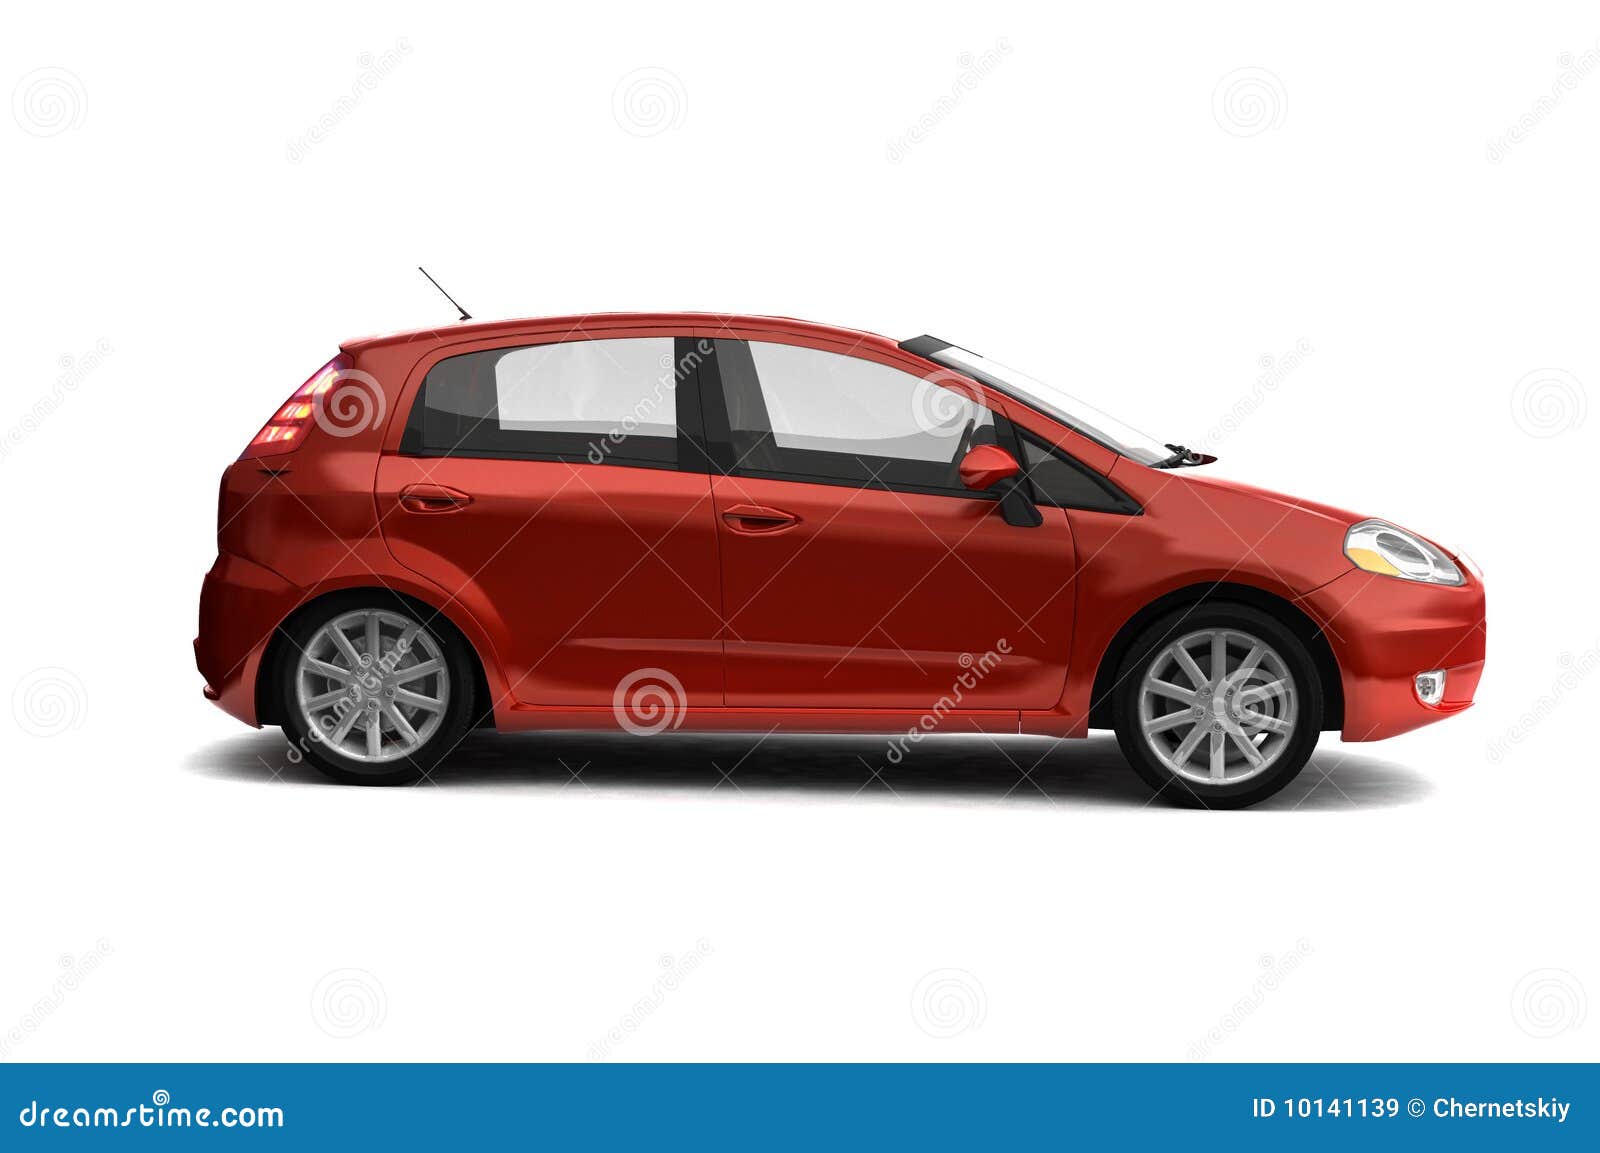 Nogen som helst Tilladelse ubetinget Hatchback Red Car Side View Stock Illustration - Illustration of sport,  drive: 10141139